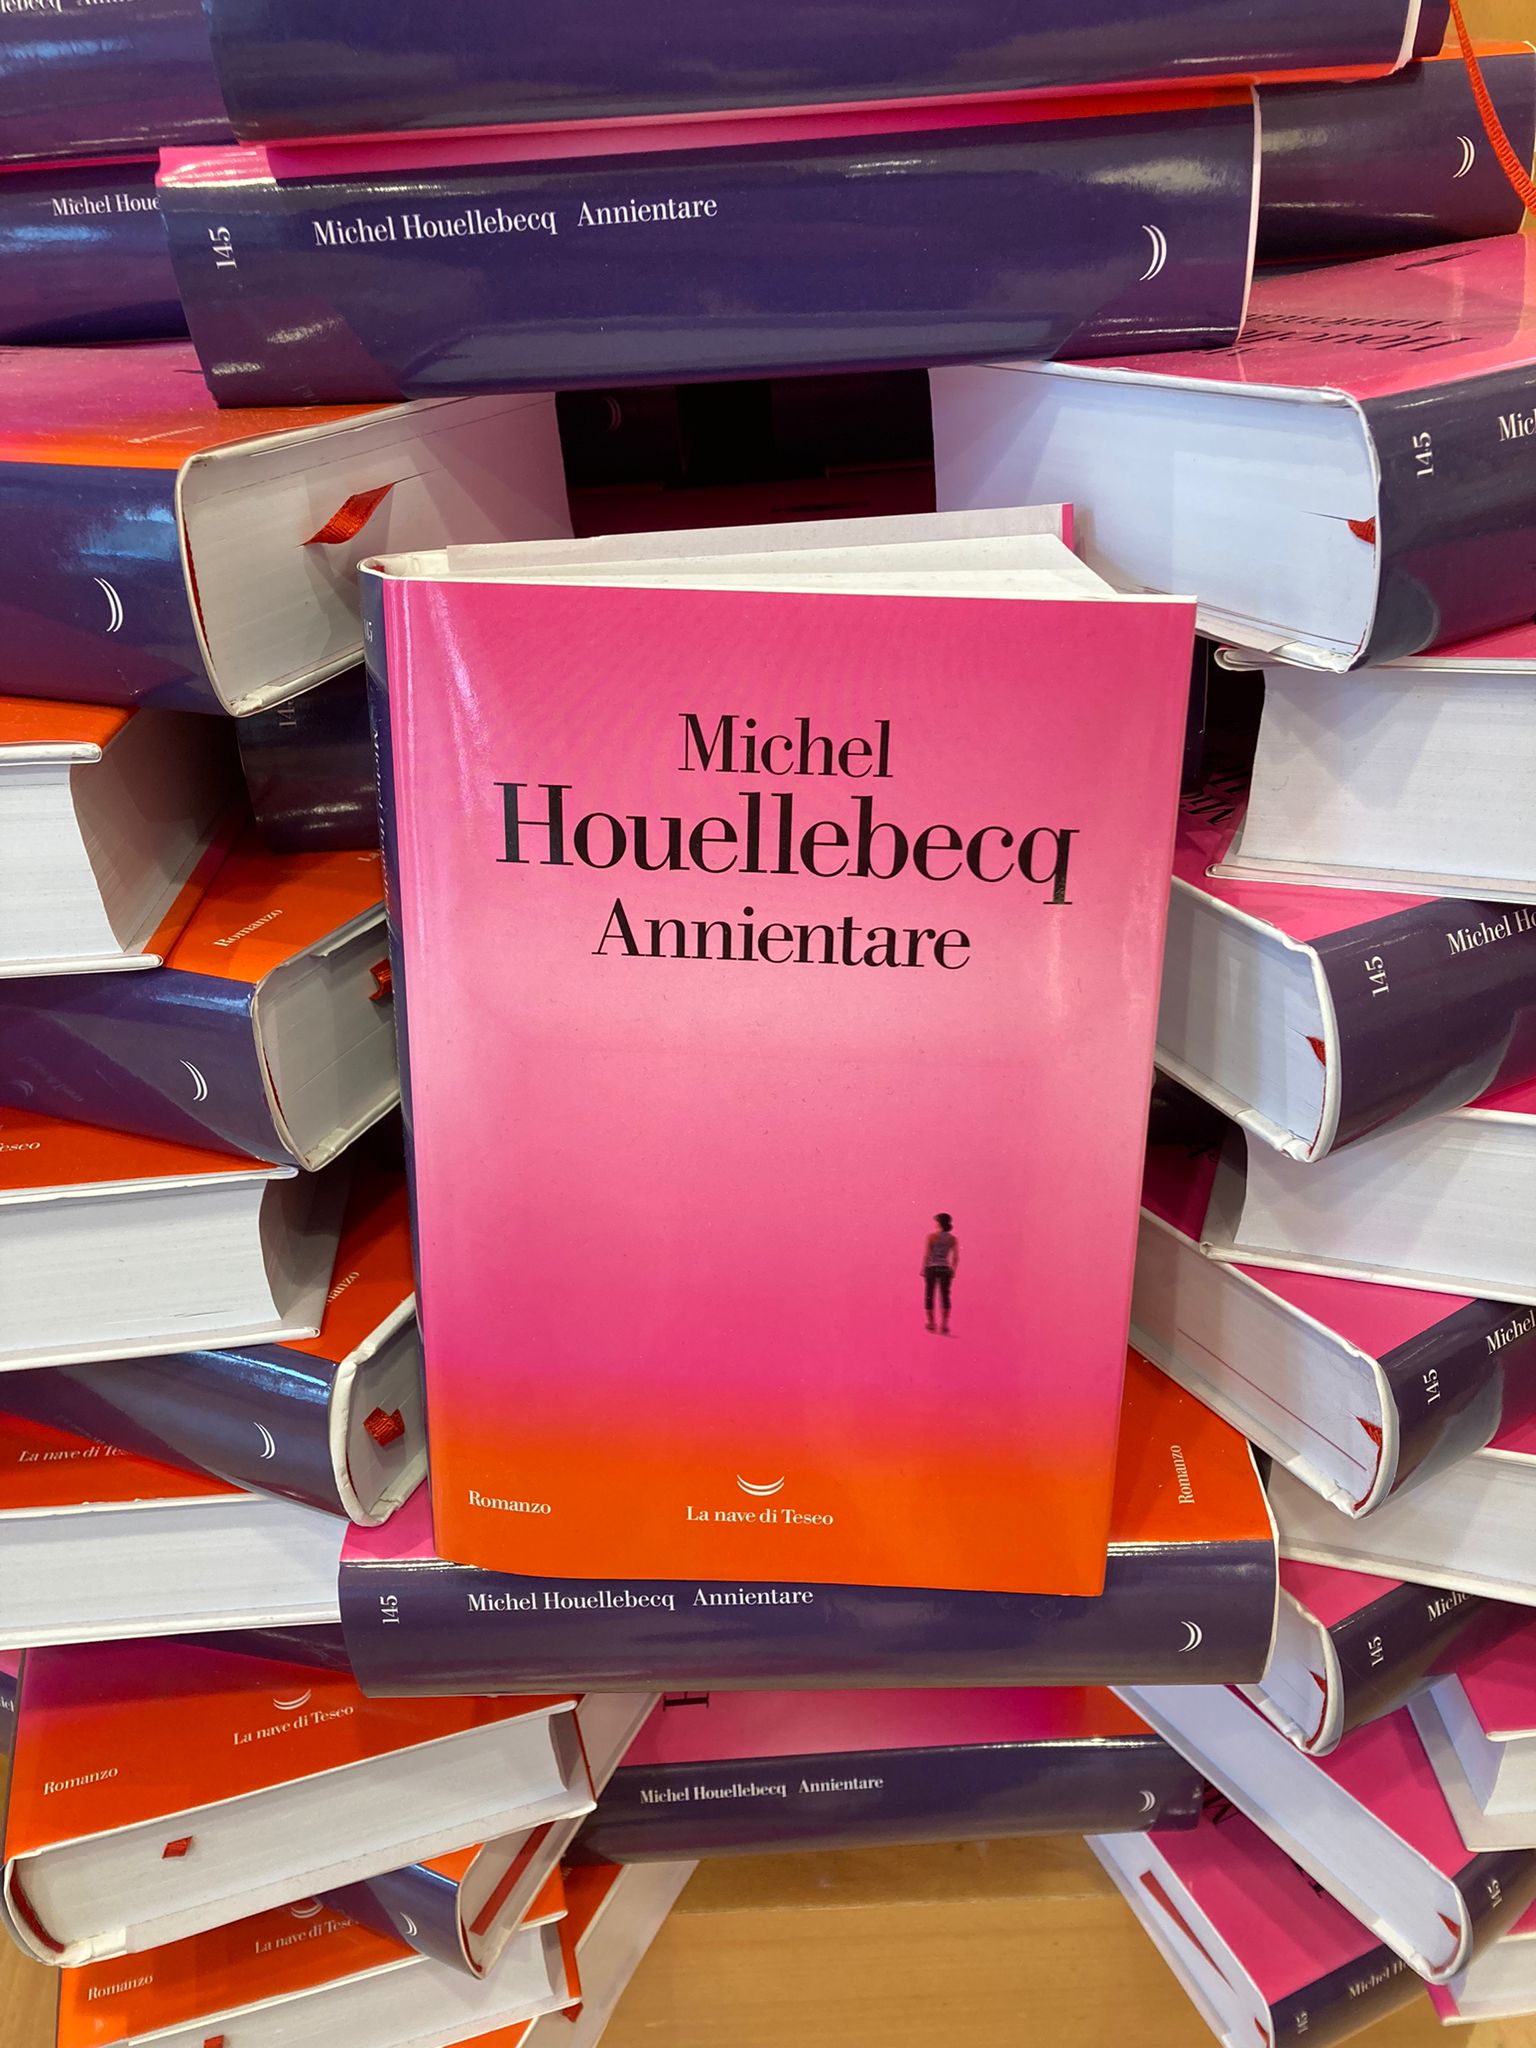 Annientamento il nuovo romanzo di Michel Houellebecq. Il pretesto dell’attacco hacker mette al centro il grande tema della morte